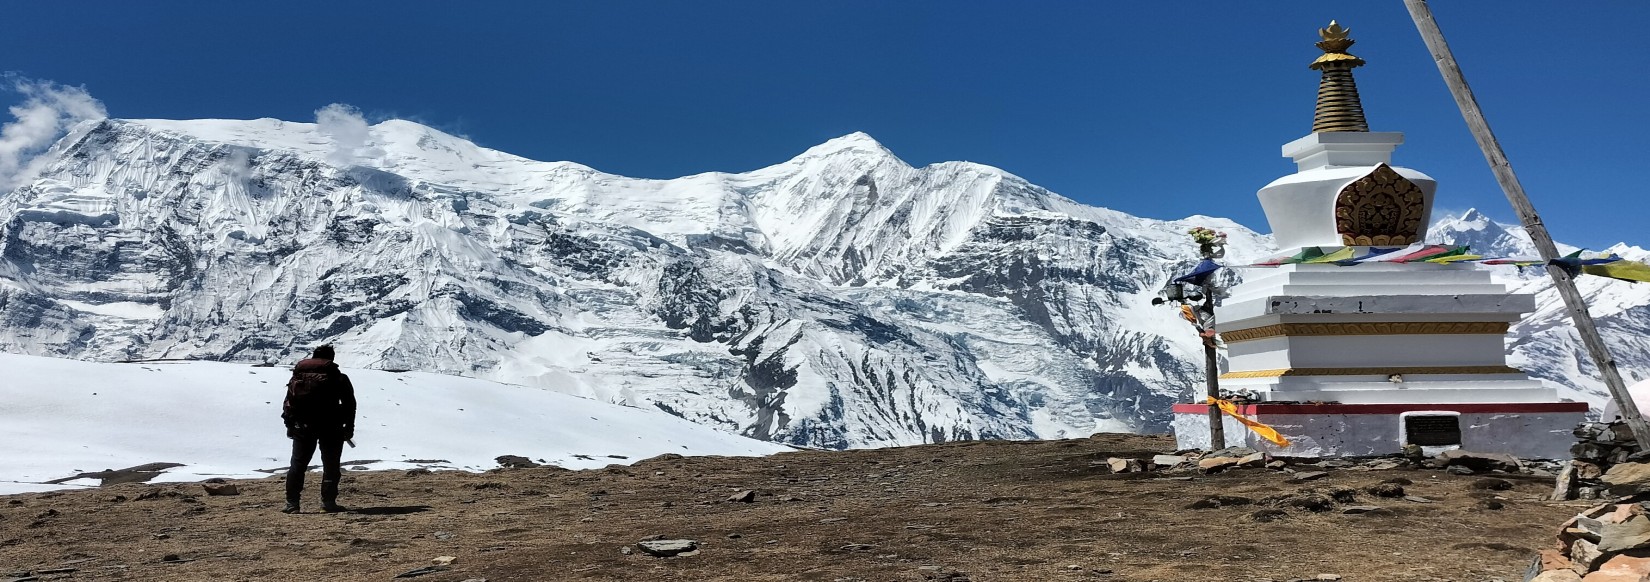 Kicho tall in Annapurna region 